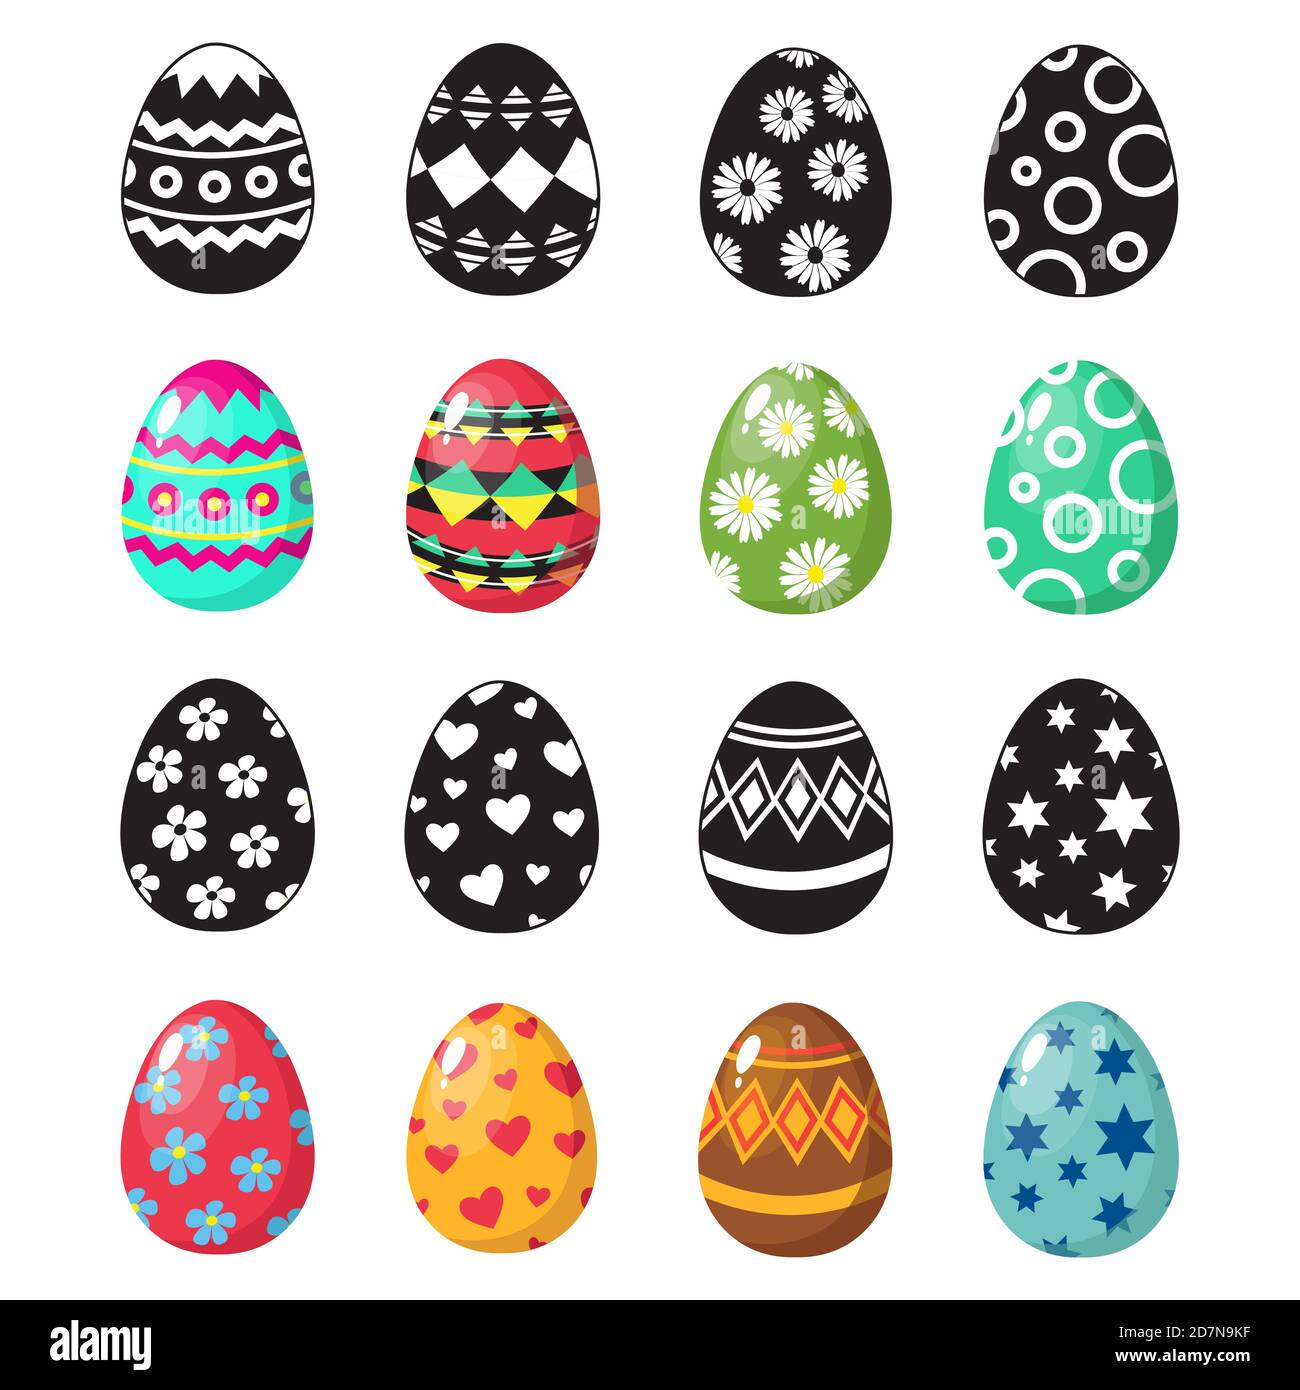 Colorful e bianco e nero uova di pasqua icone insieme vettoriale. Illustrazione dell'uovo di pasqua, Pasqua di festa Illustrazione Vettoriale